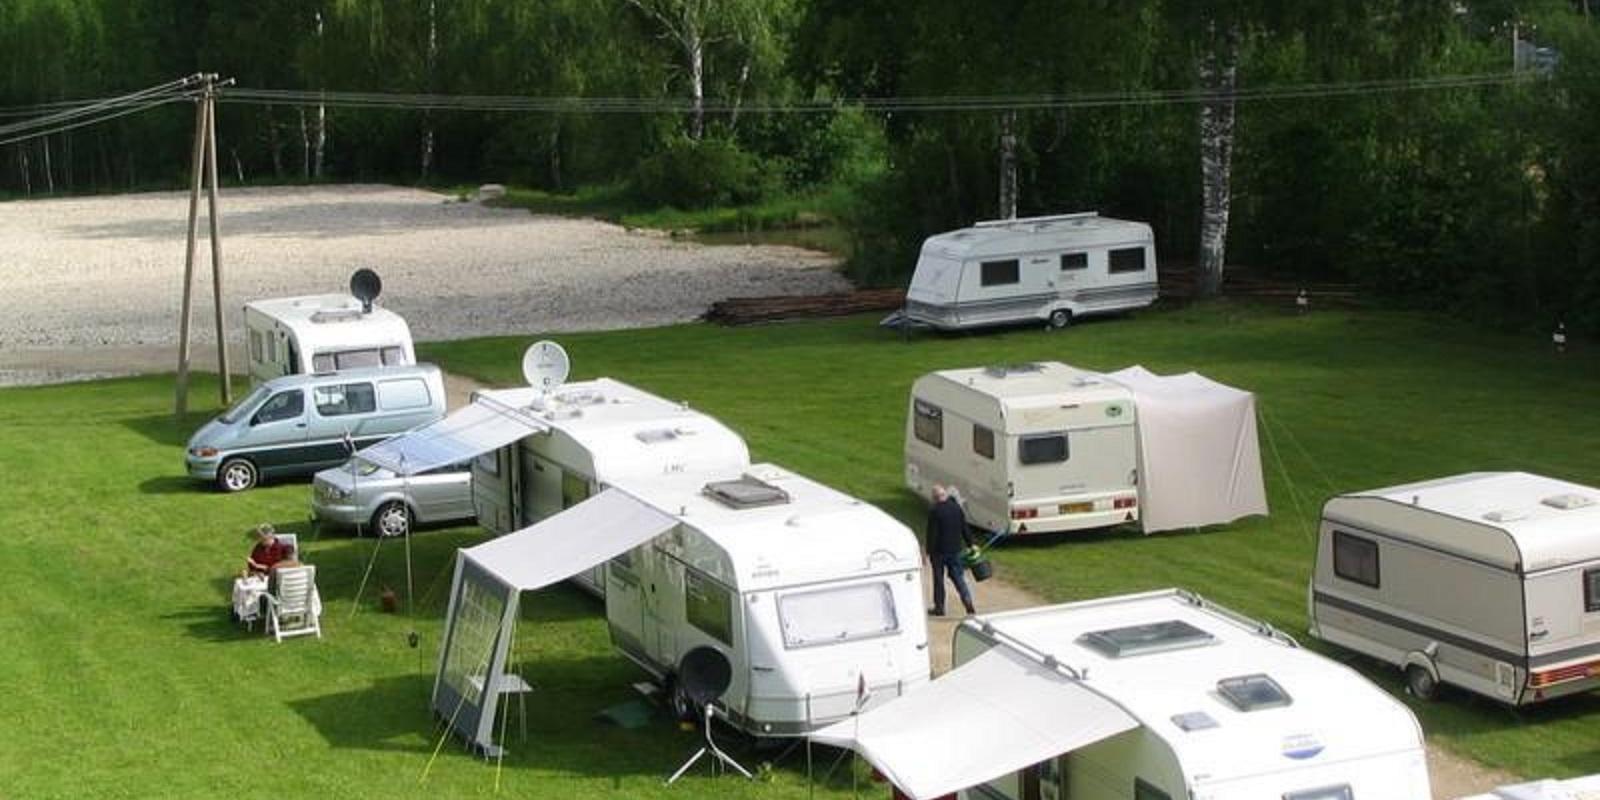 Caravan park of Waide motel